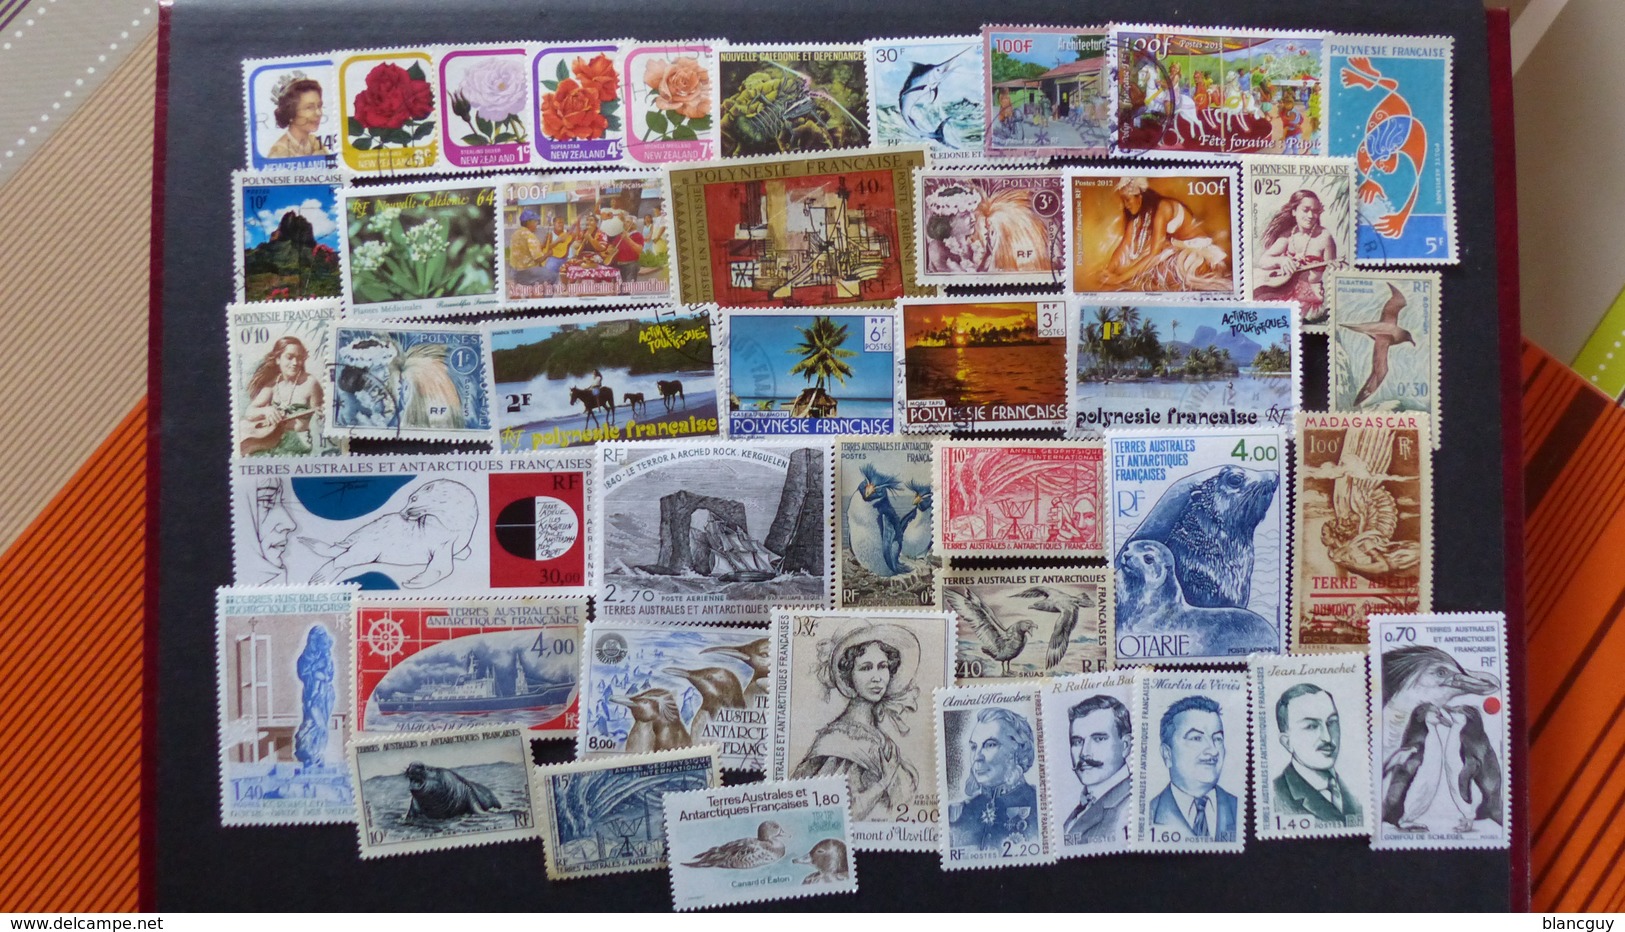 Vrac de 3100 timbres oblitérés du monde, quelques neufs, tous différents